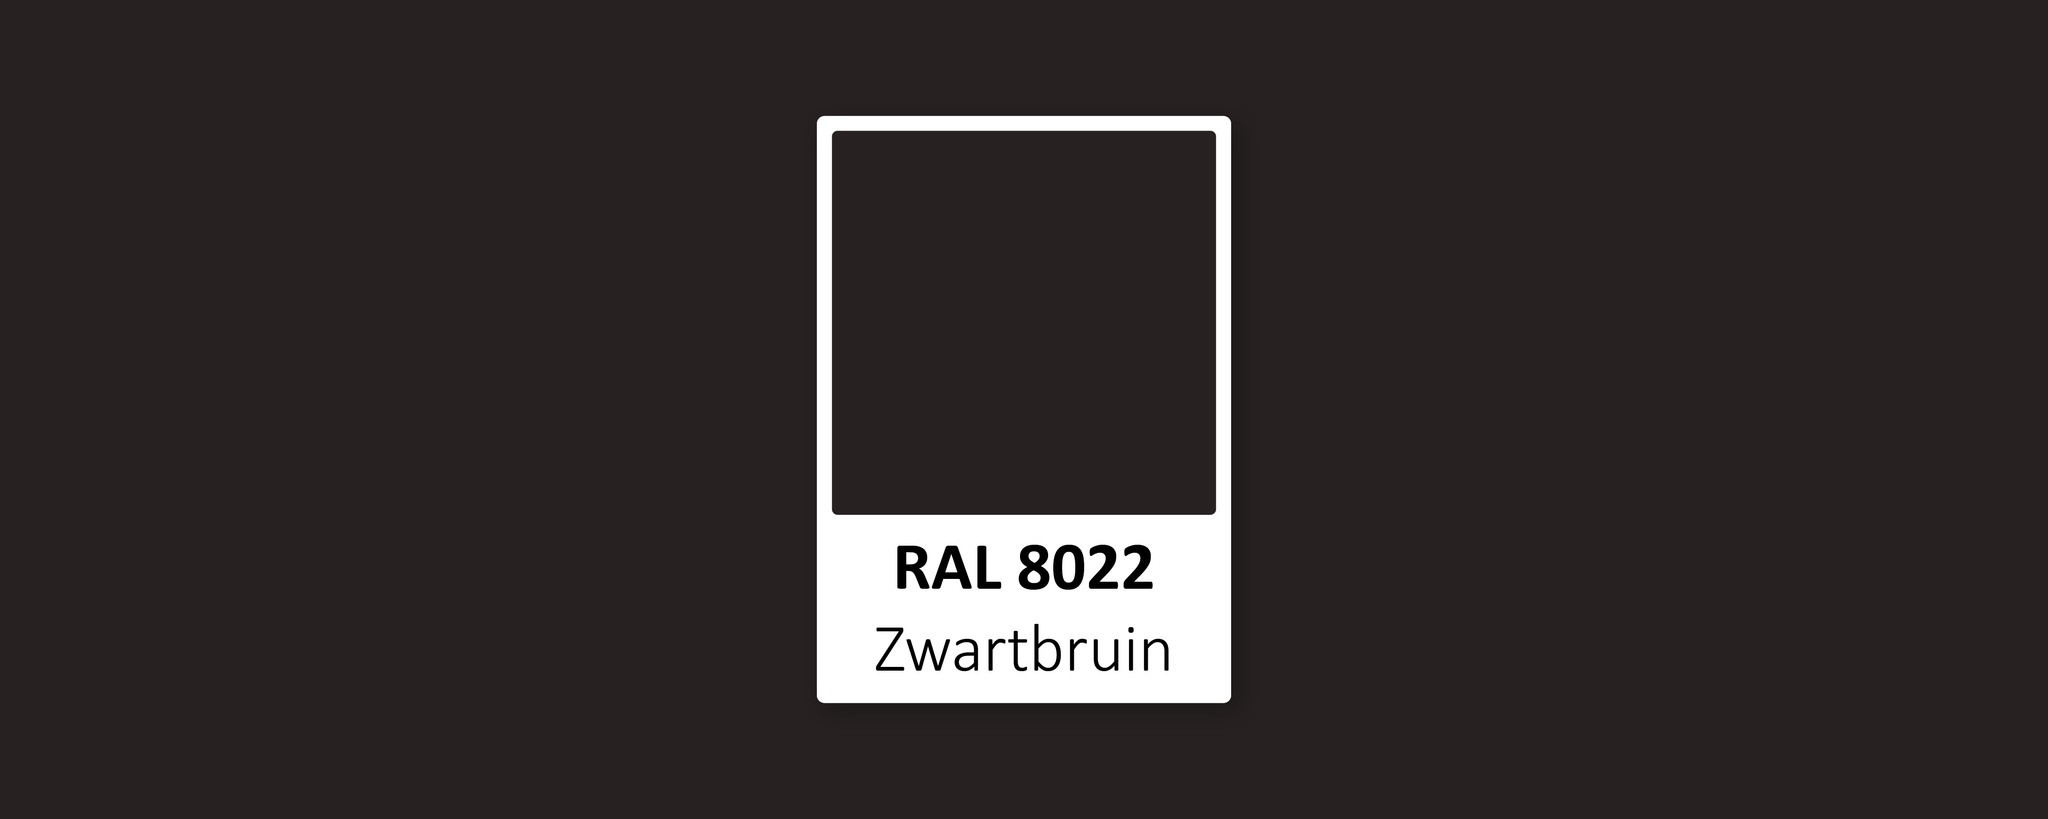 Gecomprimeerd output mist RAL 8022: wat voor kleur is het? - De Verfzaak